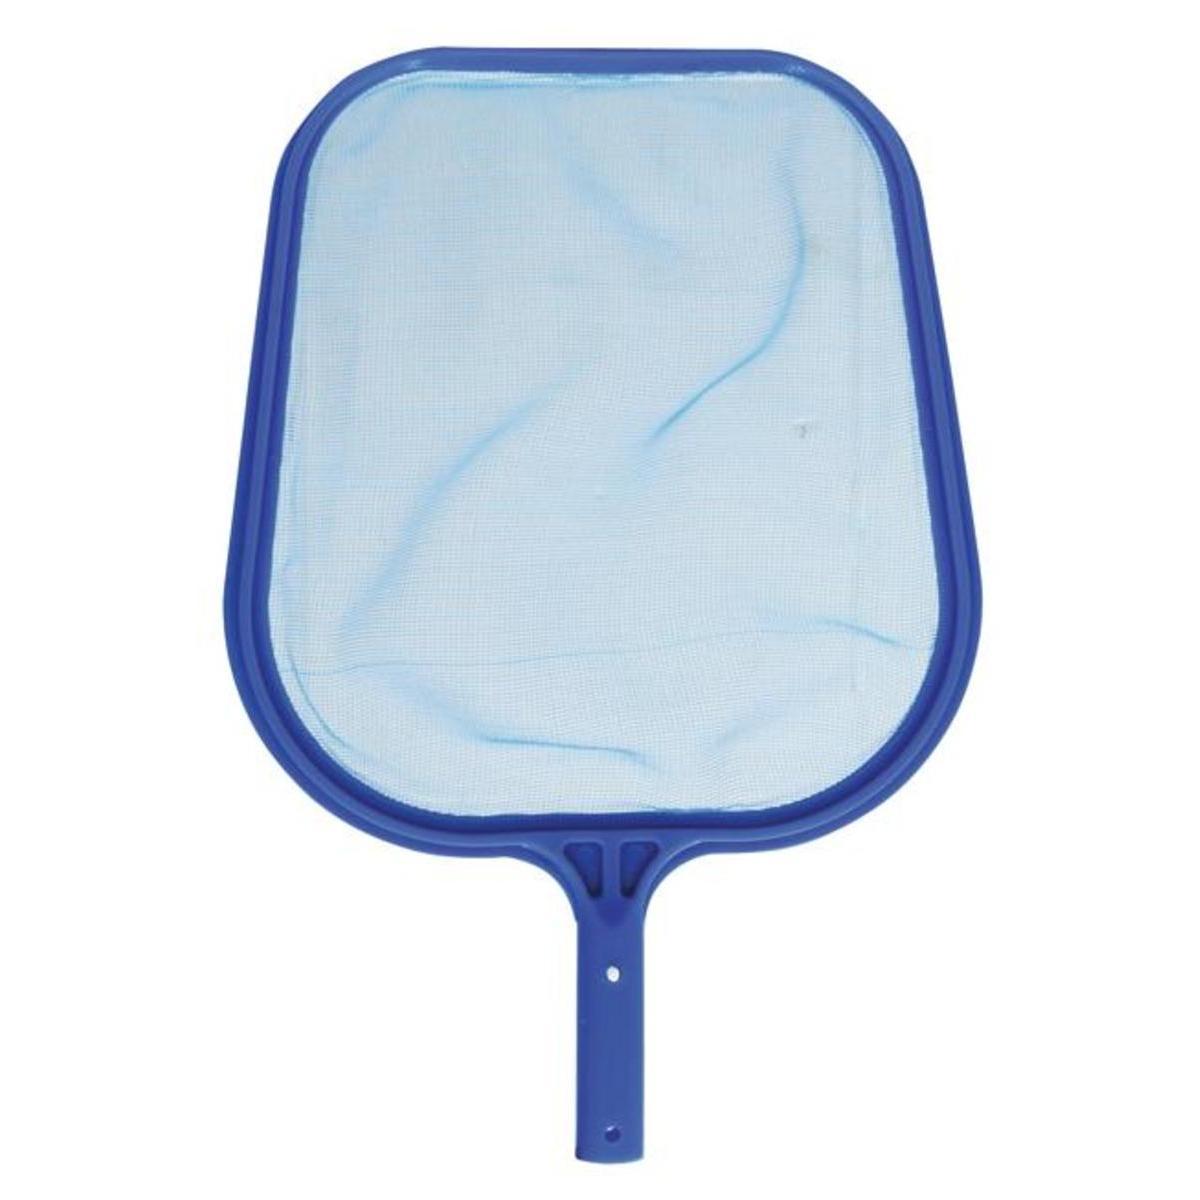 Épuisette de surface pour piscine - 44.5 x 30.5 cm - Bleu